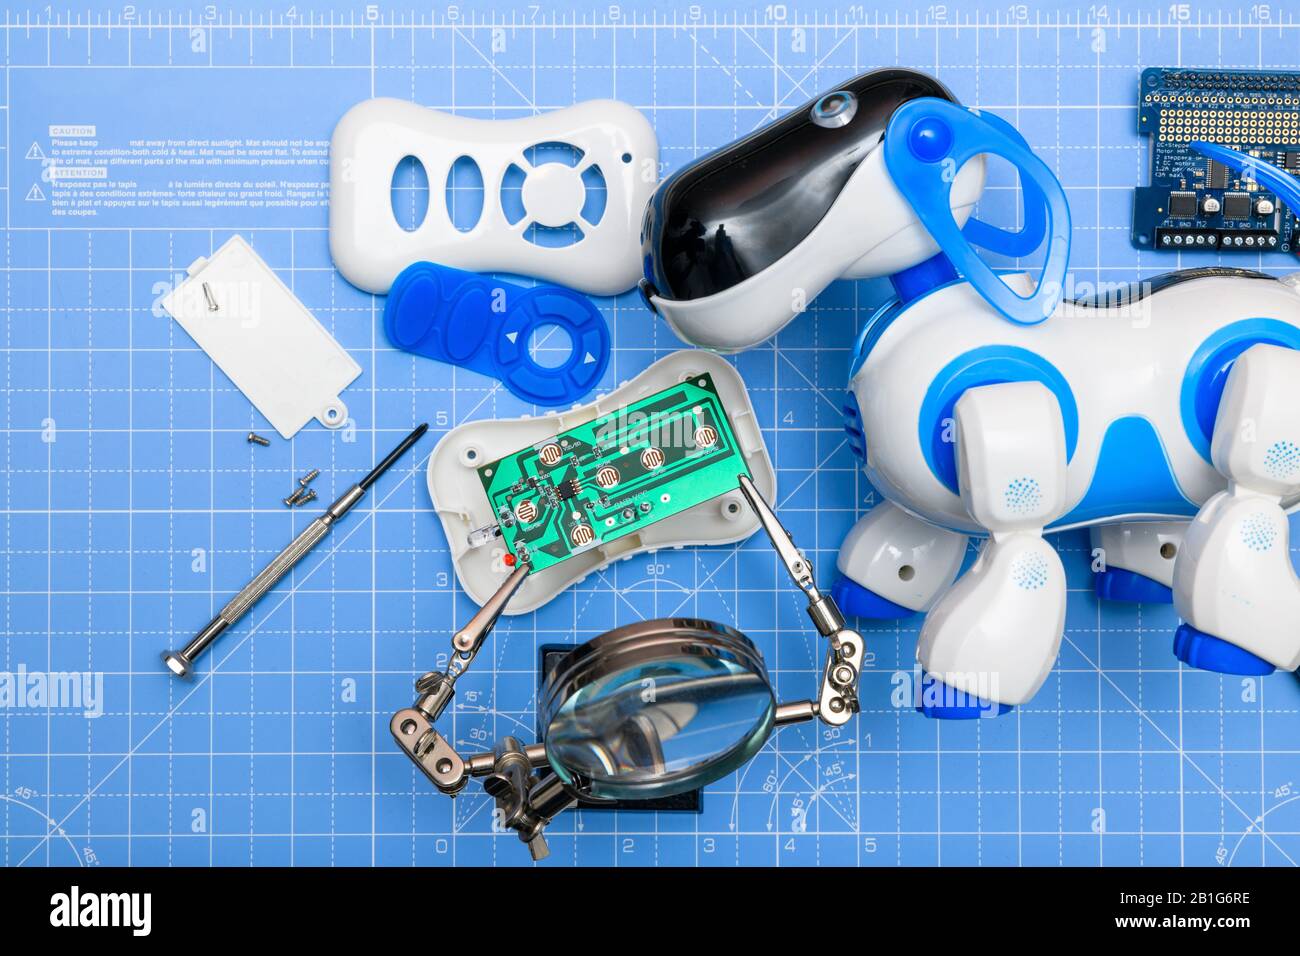 Giocattolo robot cane con scheda a circuito stampato in fase di assemblaggio.Concetto di giocattoli ed elettronica assemblati, riciclati, riparati o utilizzati per l'istruzione in elettronica. Foto Stock